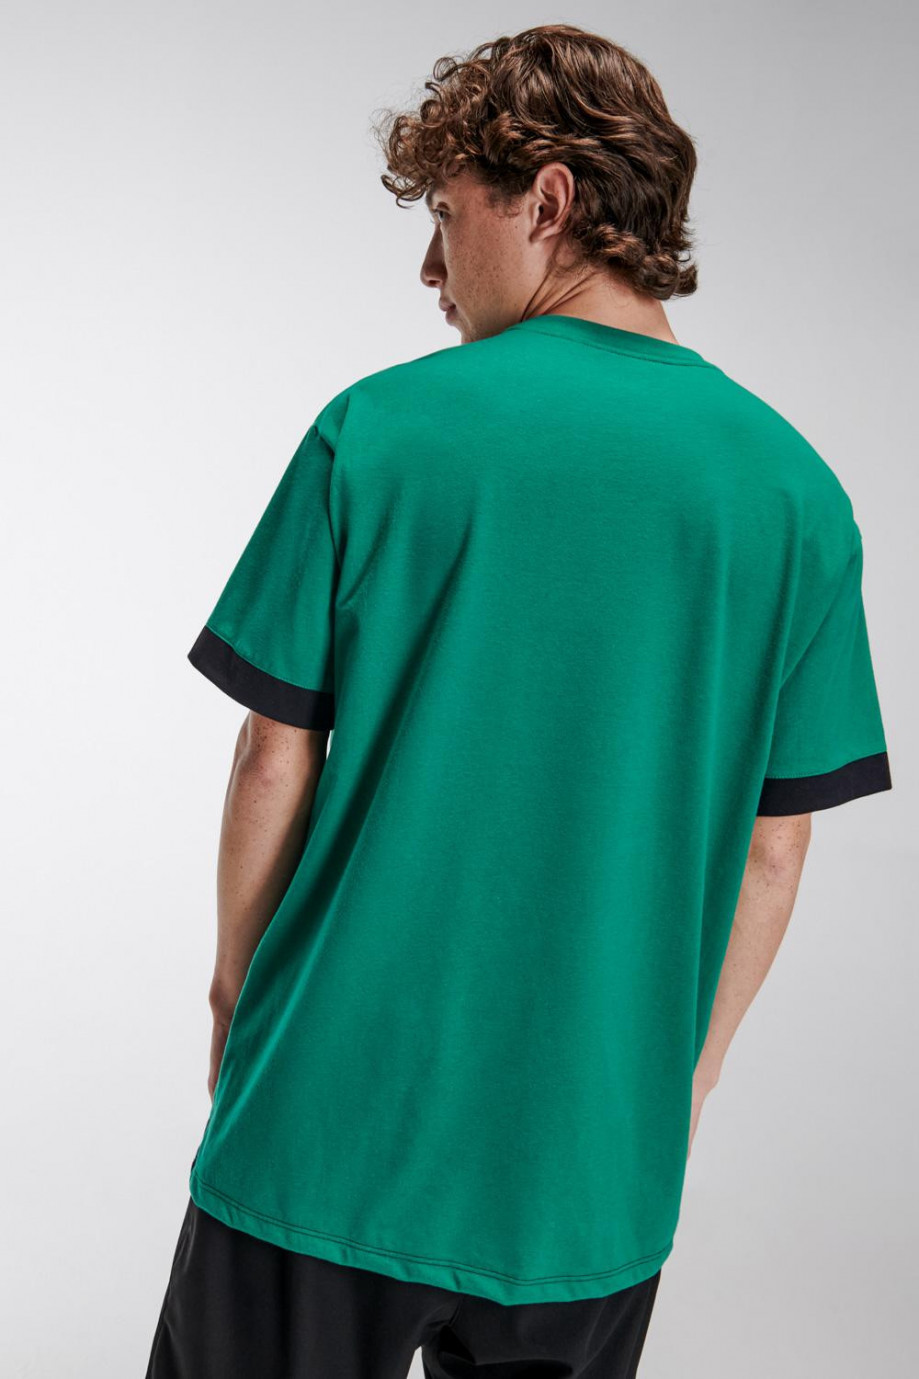 Camiseta manga corta verde con estampado y puños en contraste